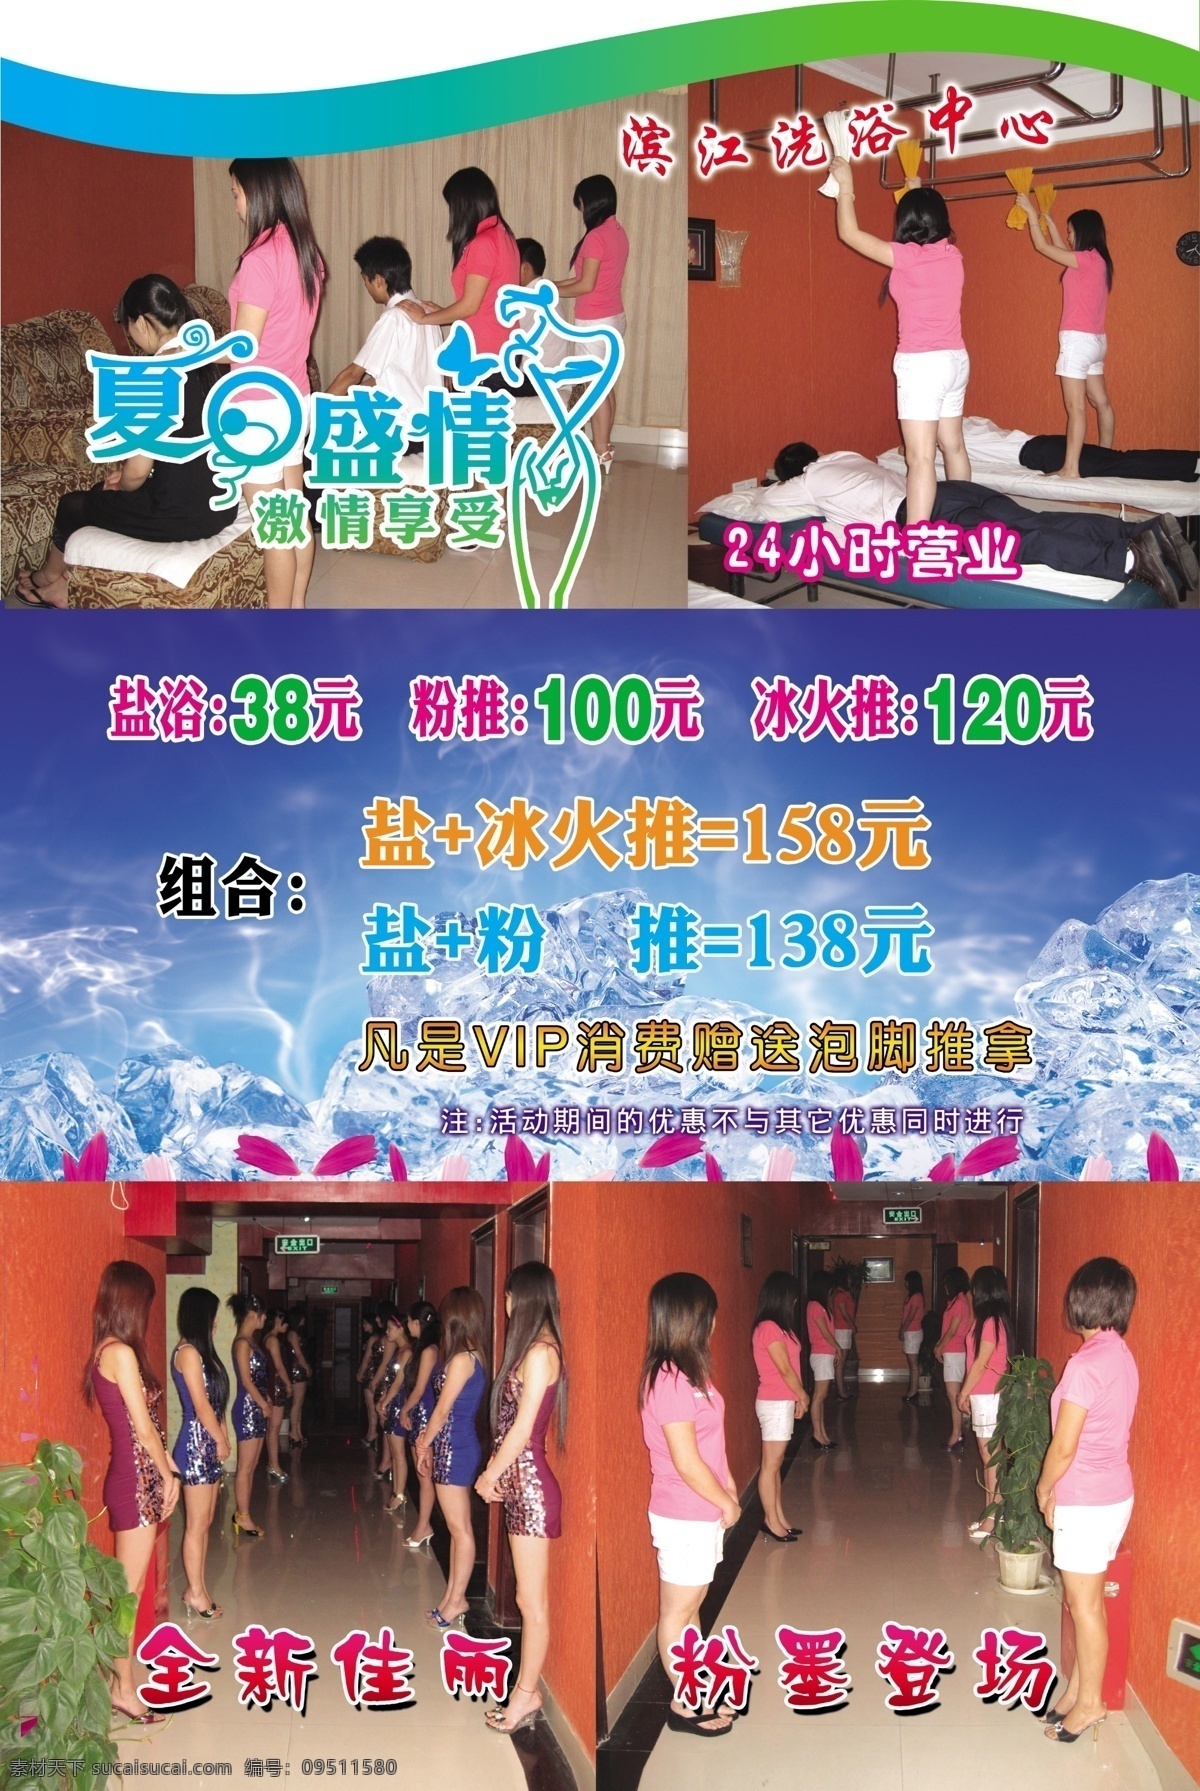 滨江 洗浴中心 psd素材 源文件 足浴 美女 海报 广告设计模板